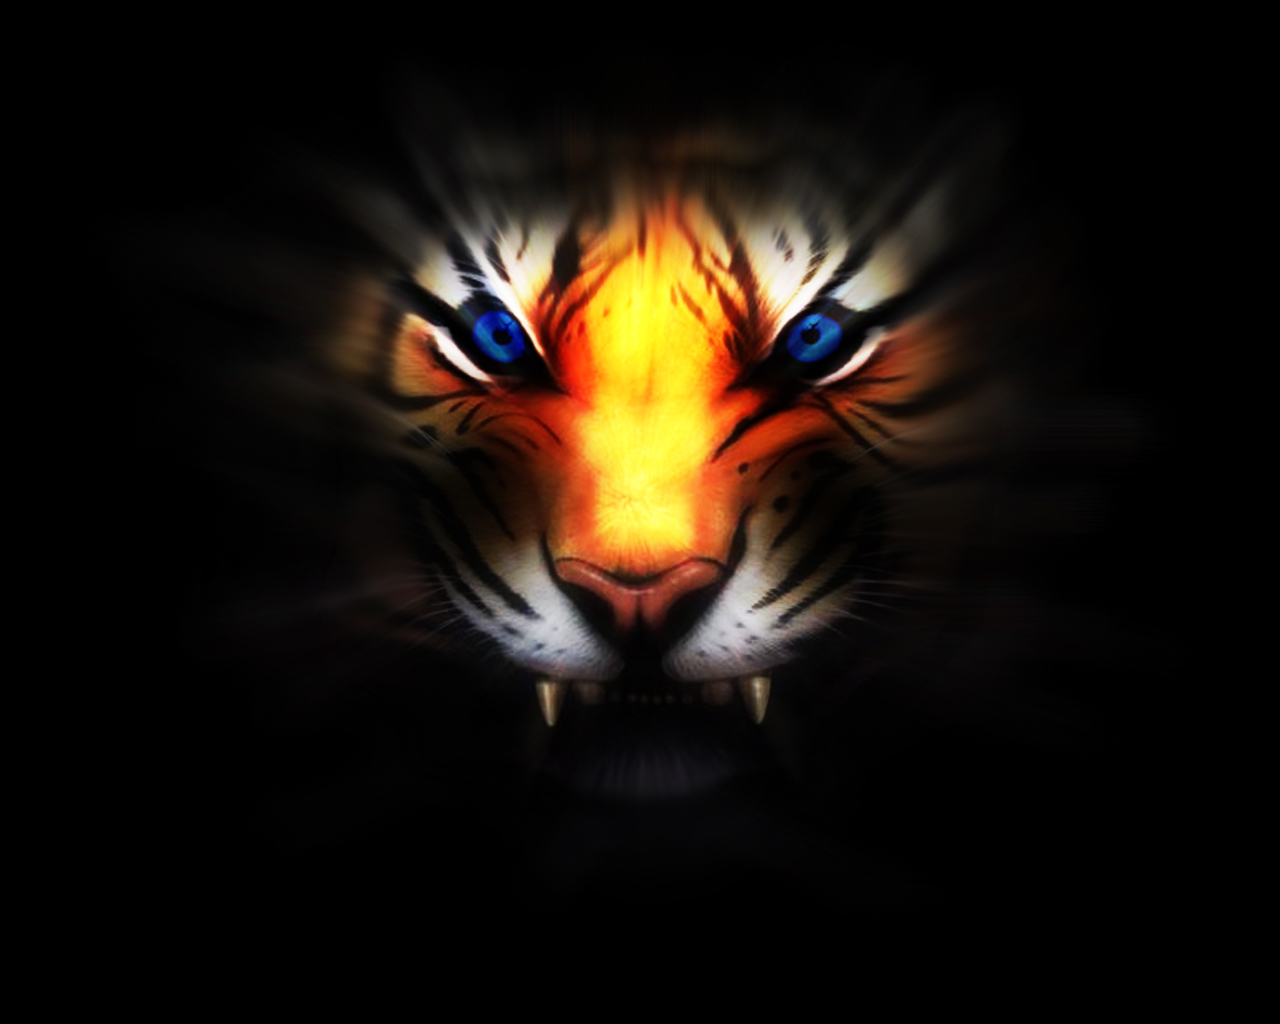 Descarga gratuita de fondo de pantalla para móvil de Fantasía, Tigre.